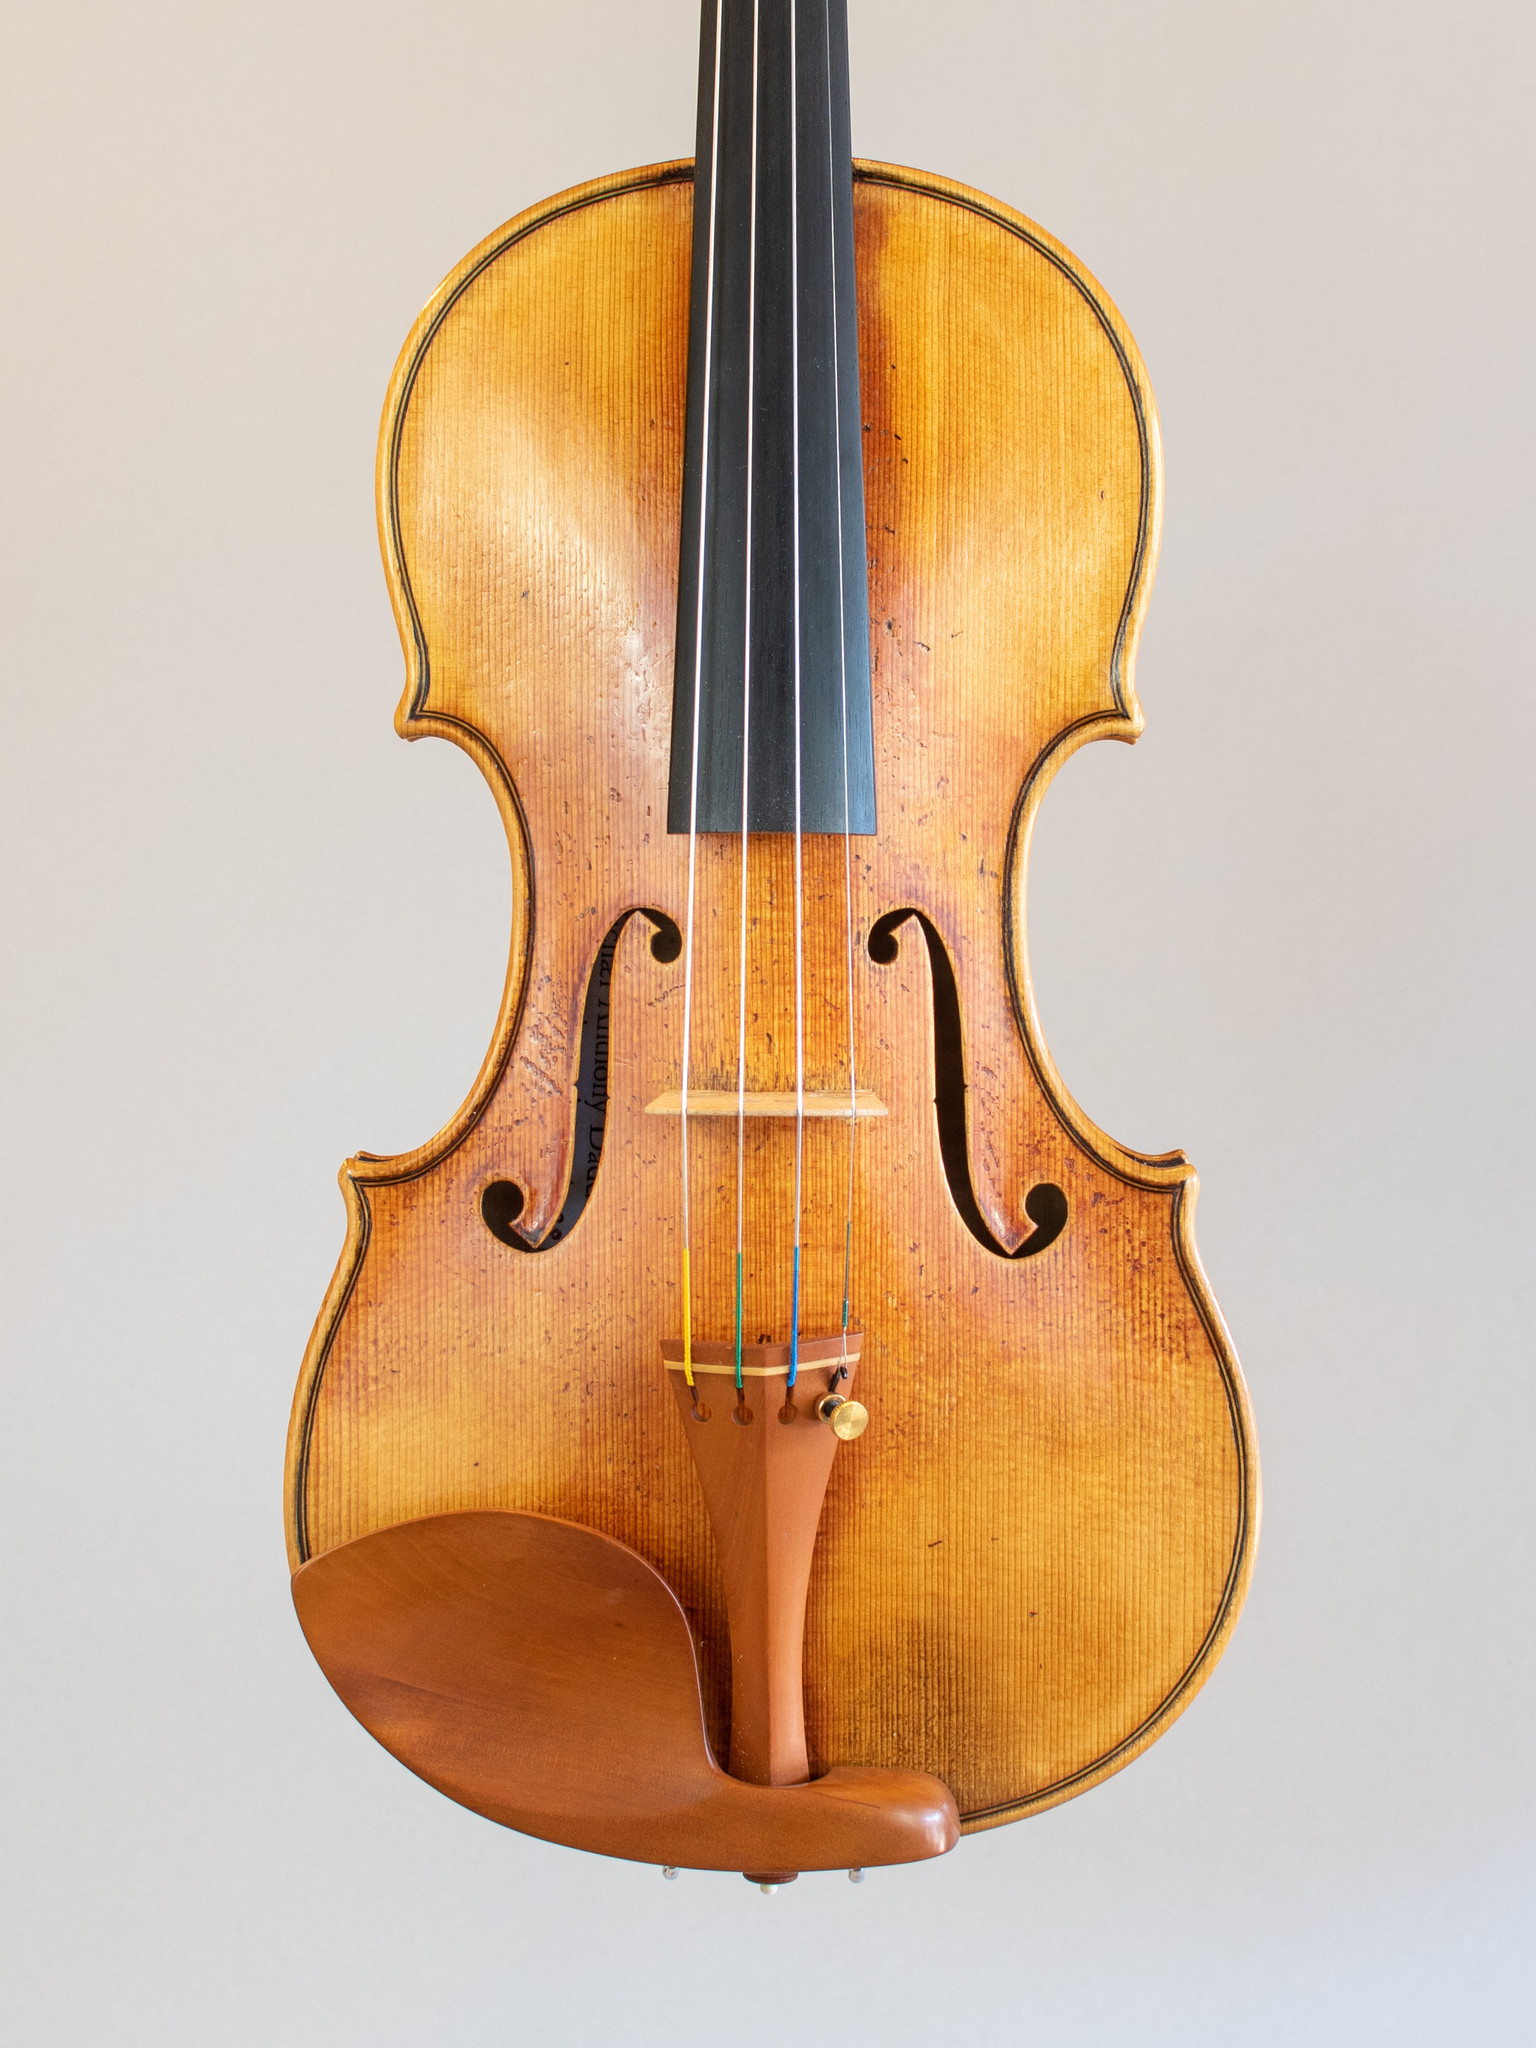 Michael Daddona violin, 2020, Connecticut, USA